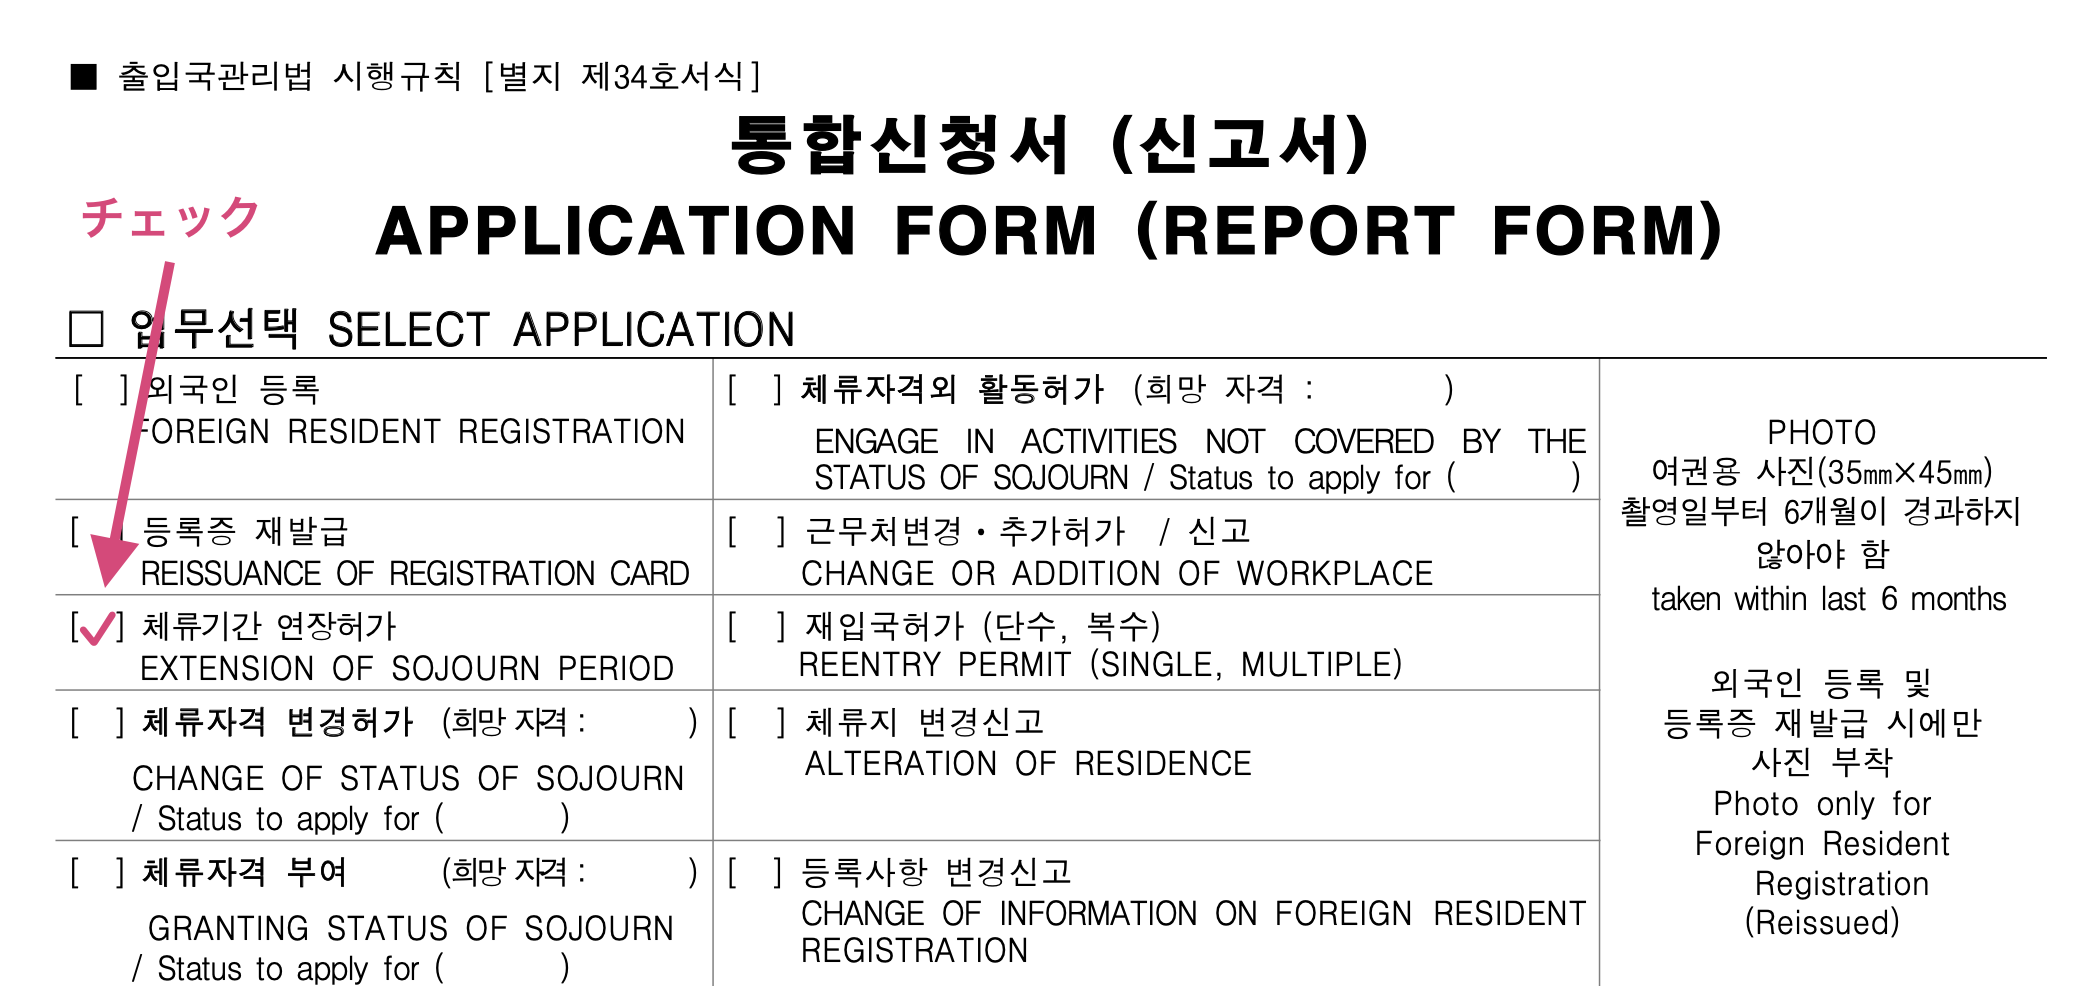 外国人登録証を延長したい場合の申請書の書き方